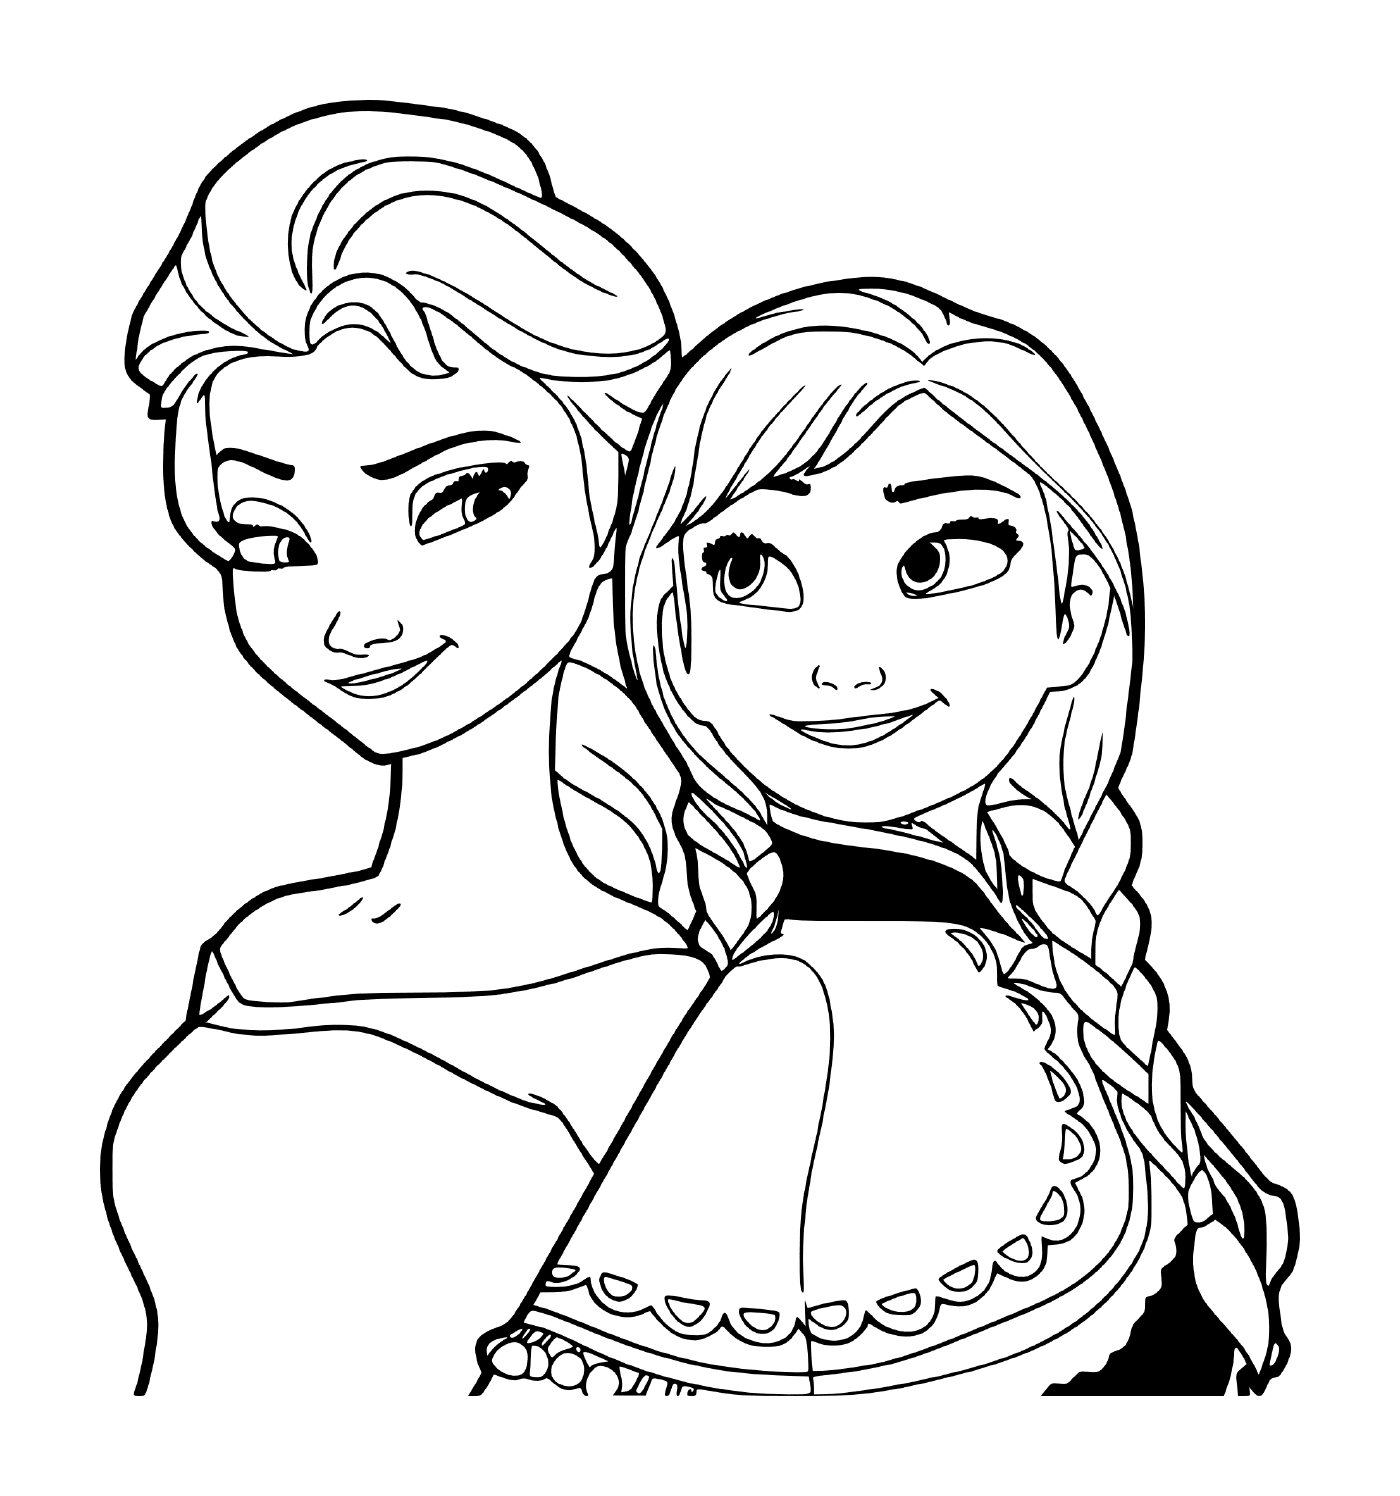  安娜和埃尔莎修女和公主 